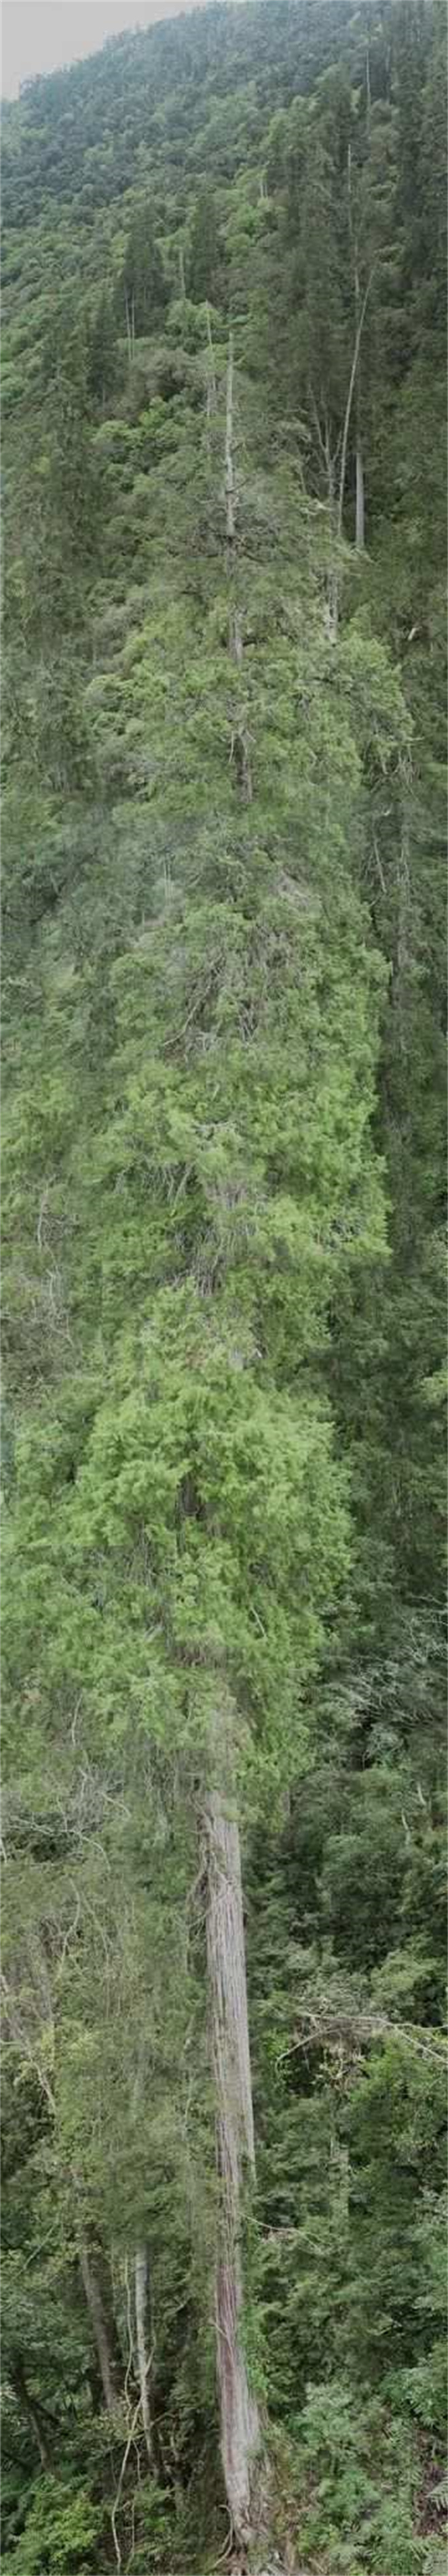 西藏102.3米“高树”刷新亚洲纪录1.jpg